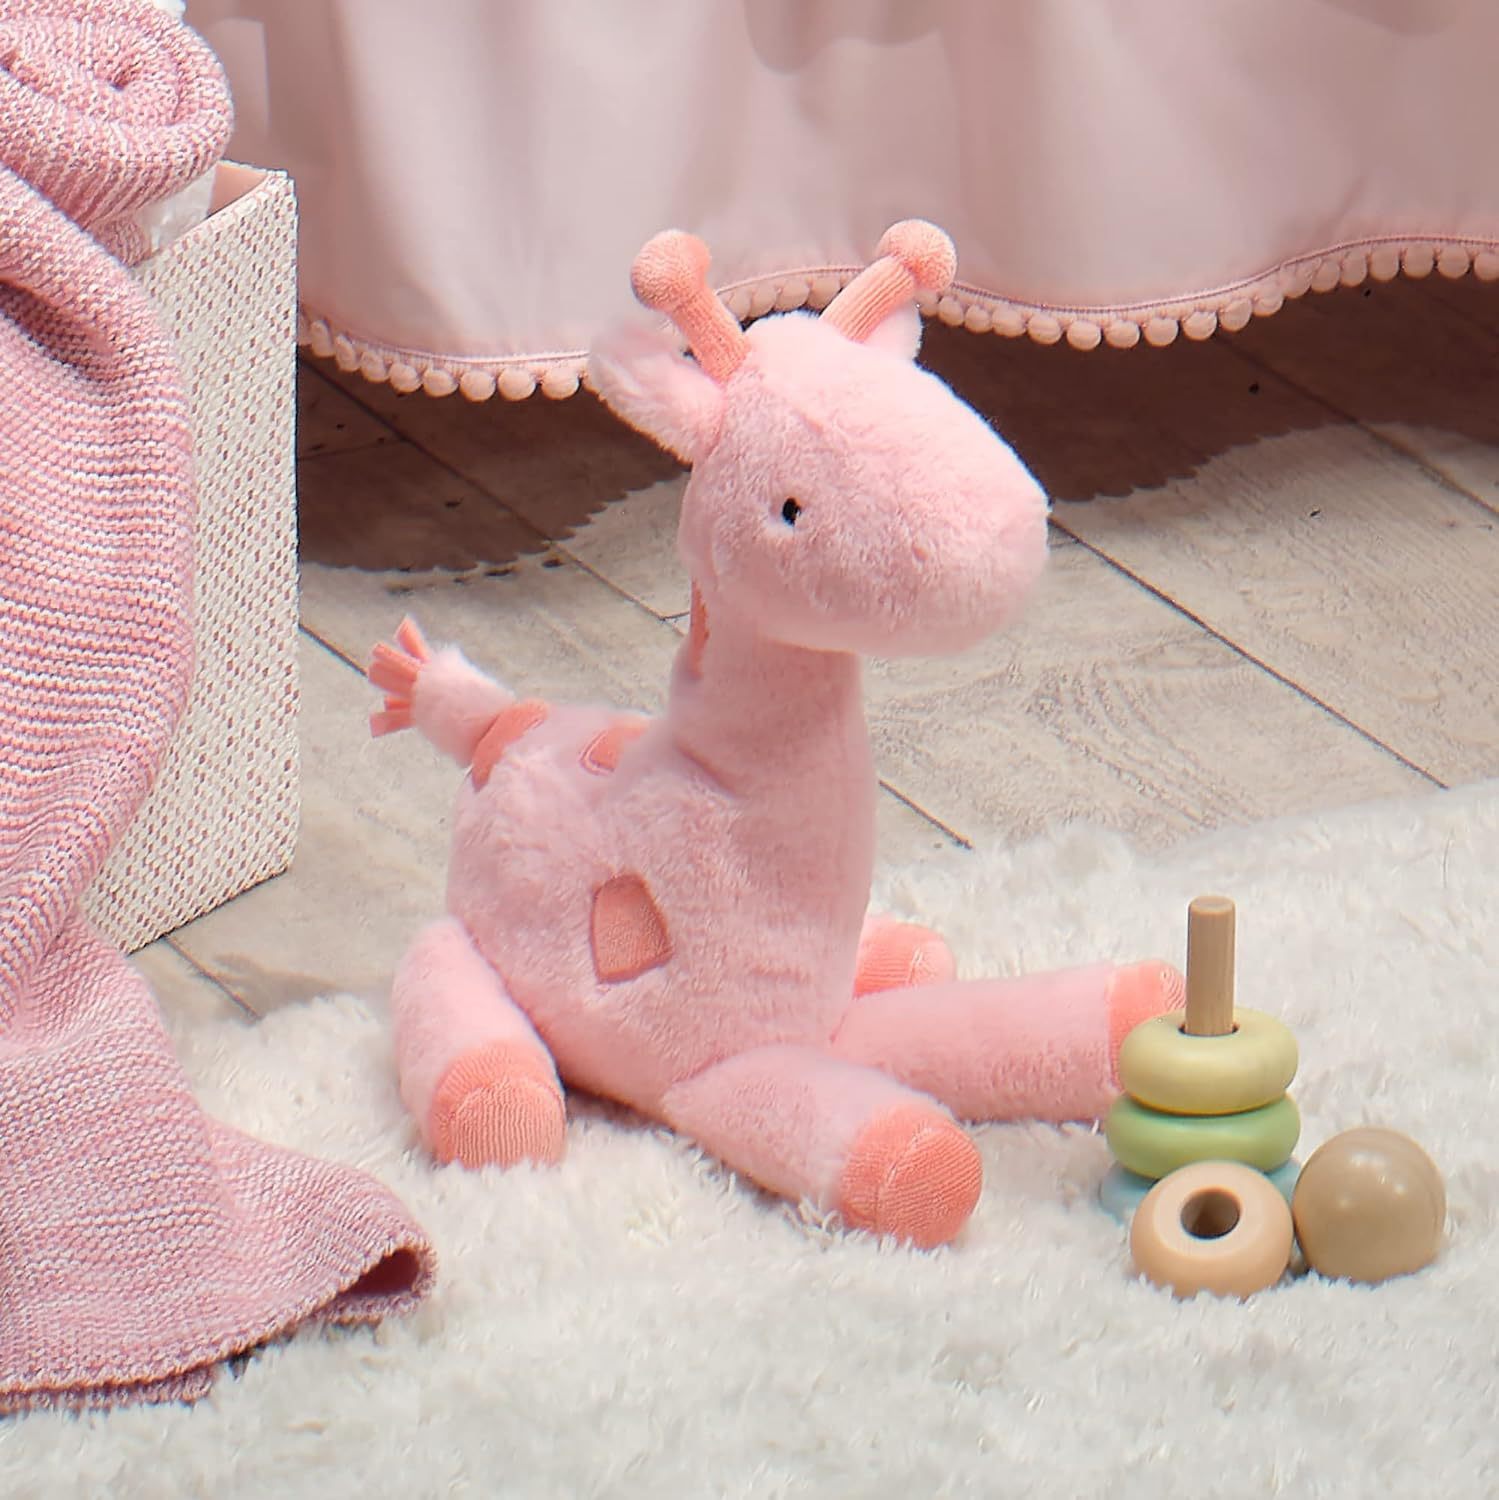 Детские мягкие игрушки-компаньоны, плюшевые игрушки с животными для сна, розовый жираф, мягкие игрушки, игрушки-жирафы на заказ